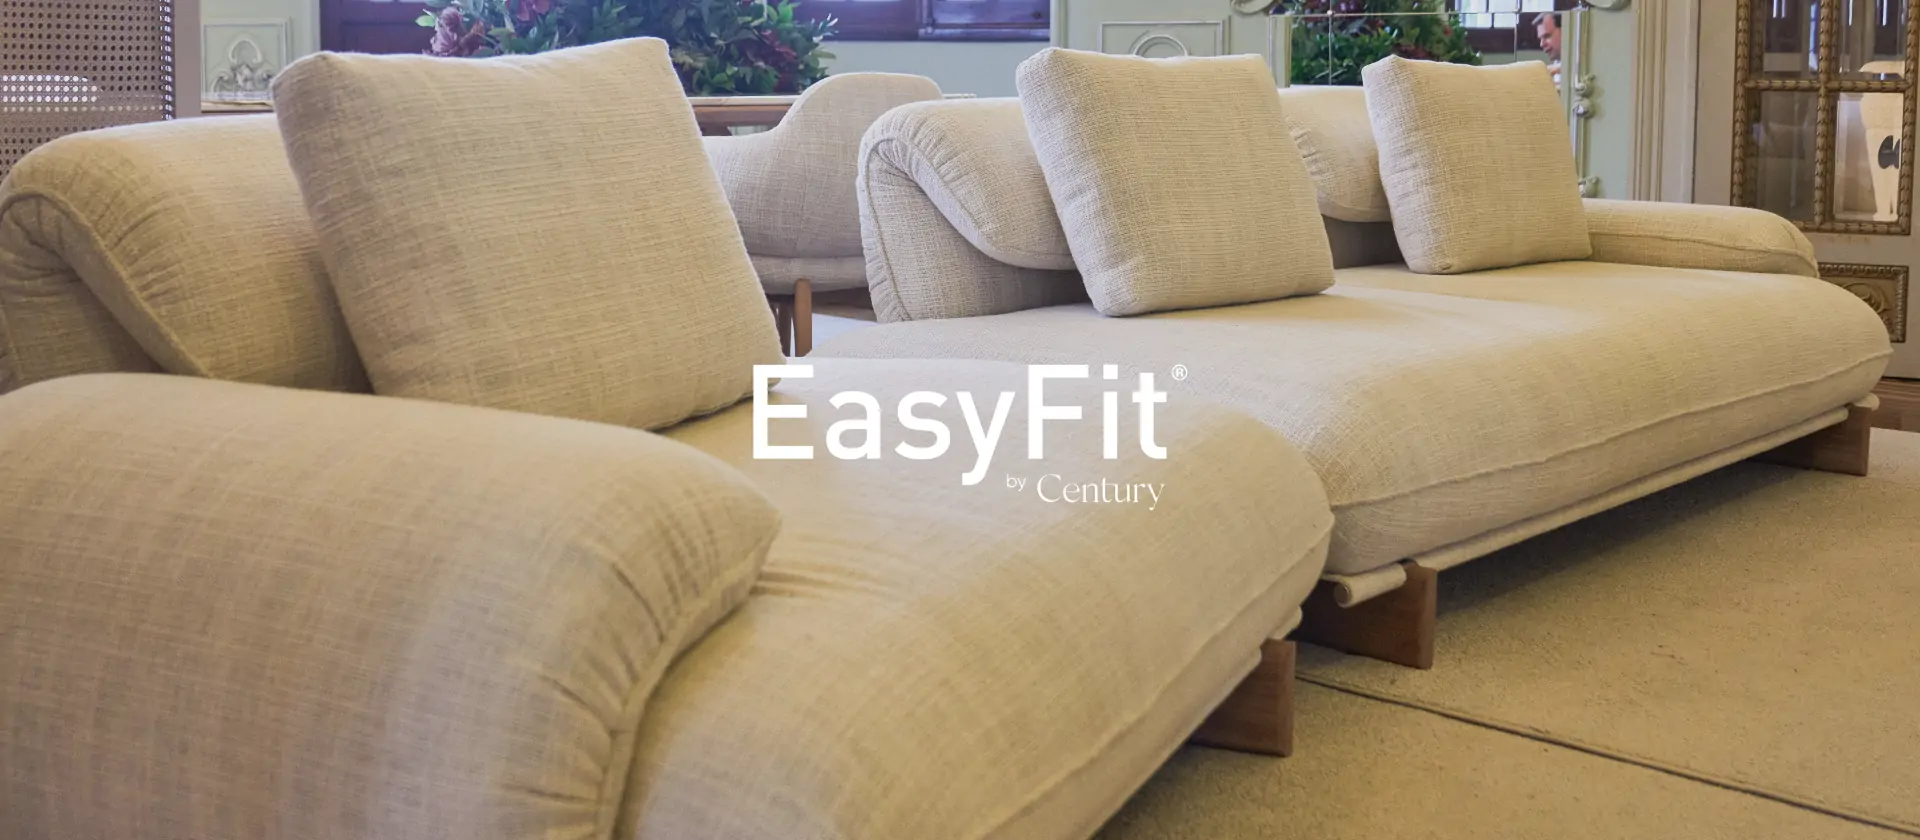 Tecnologia de conforto: a versatilidade dos sofás EasyFit by Century